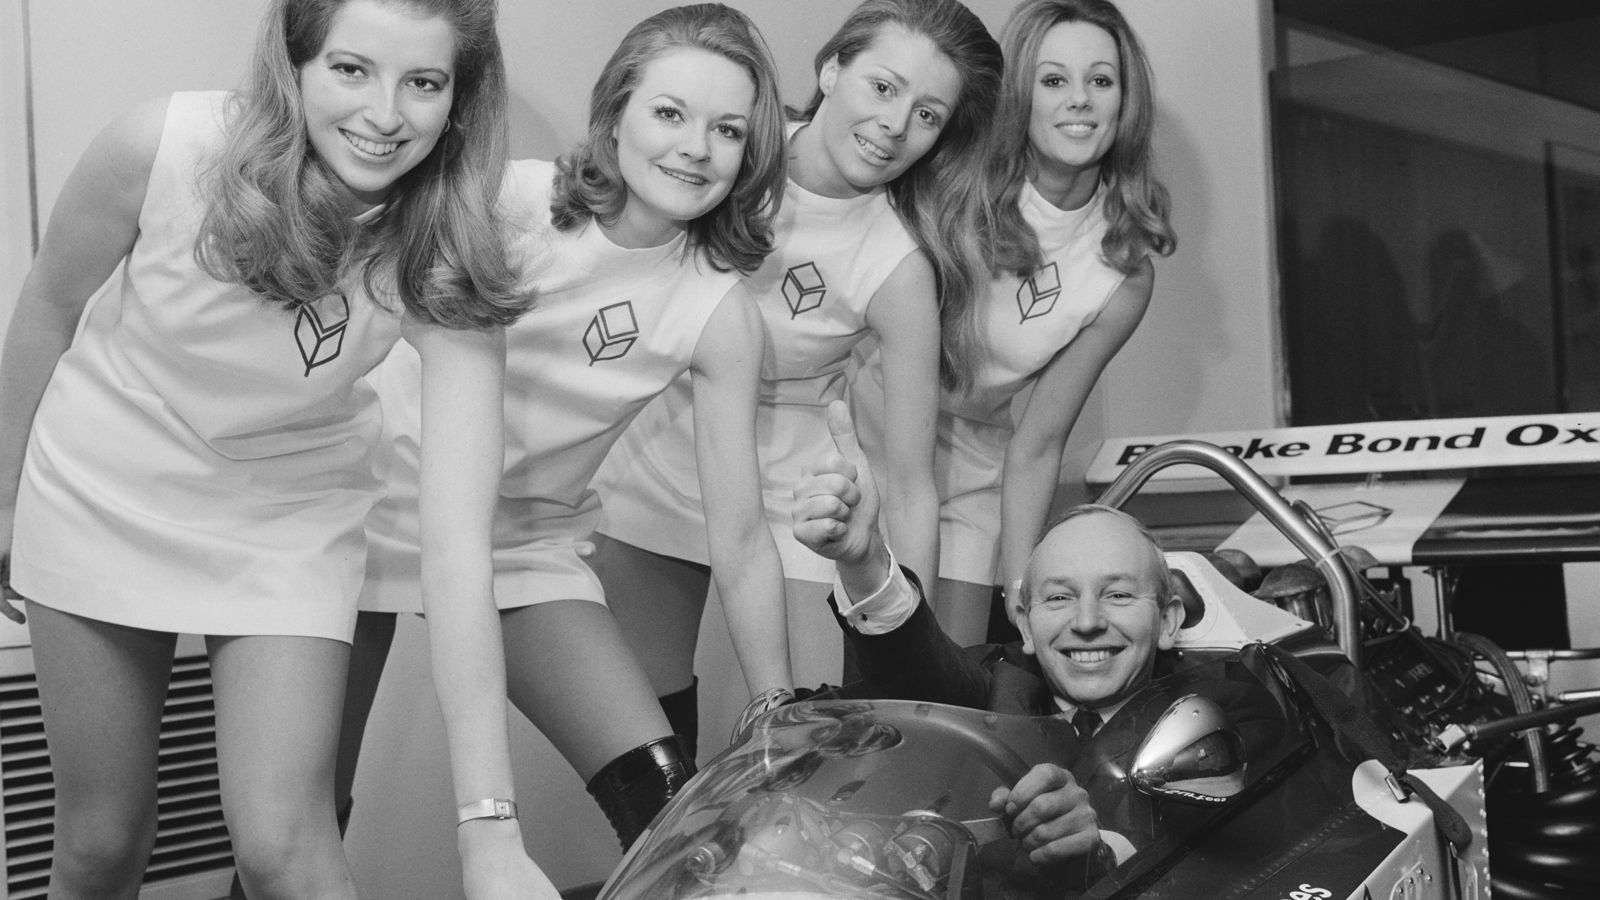 <strong>1964 - Ein Punkt Unterschied - John Surtees 40, Graham Hill 39 (41)</strong><br>Kurios! In 1964 gab es die Regel, dass nur die besten sechs Rennen pro Fahrer zählen. So konnte Surtees mit einem Zähler vor Hill gewinnen, obwohl dieser eigentlich mehr Punkte sammelte (41). Doch die besten sechs Rennen hatte Surtees.